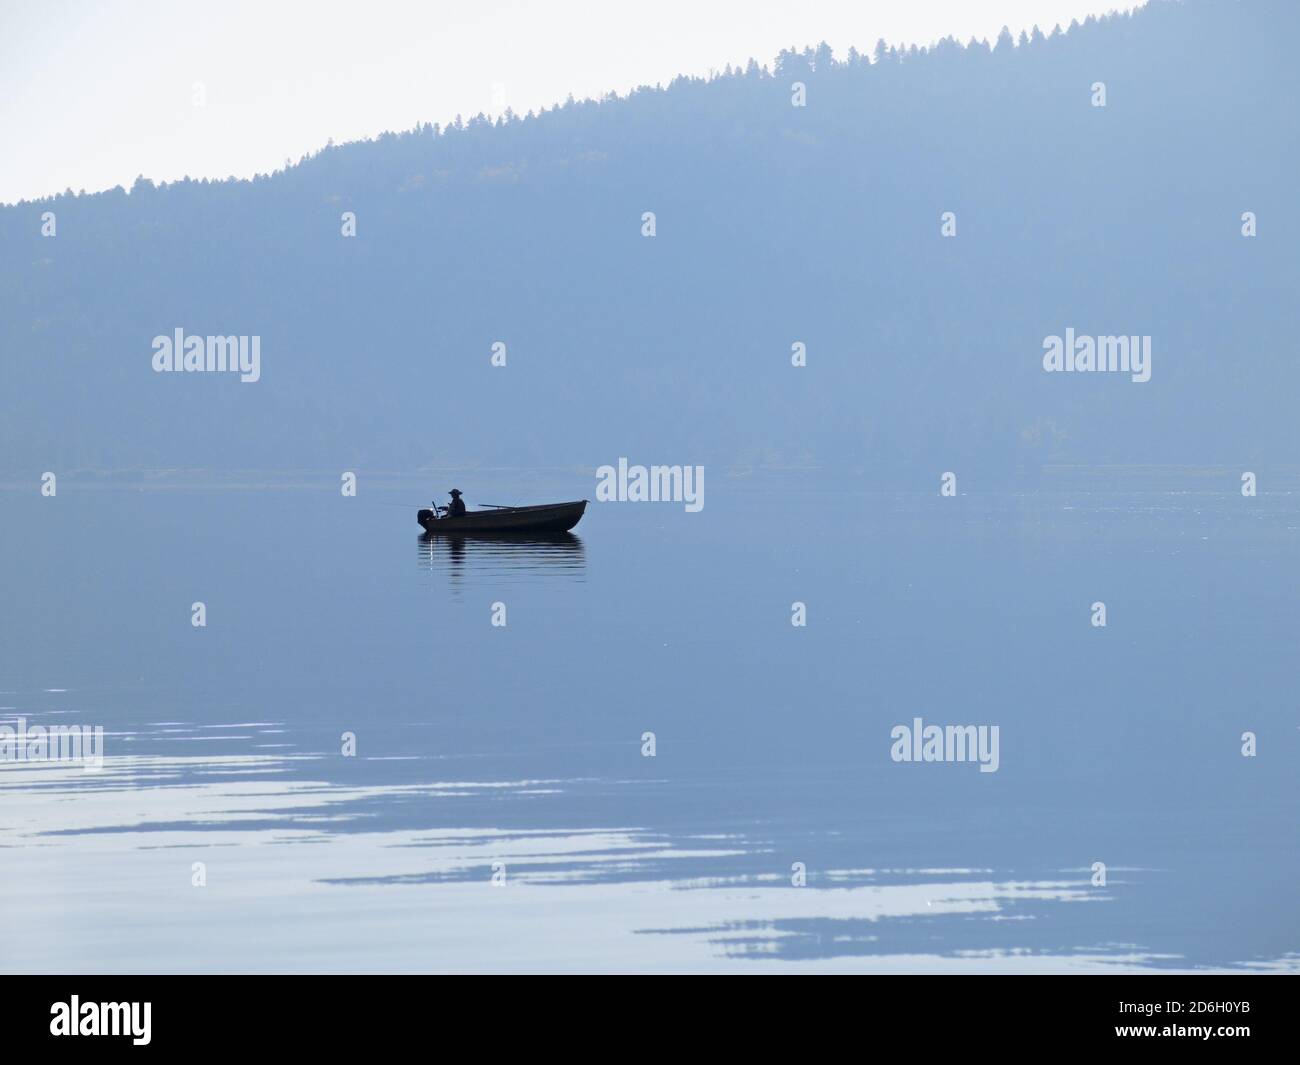 pescatore in barca silhouette sul lago calmo con montagna riflettente su acqua Foto Stock